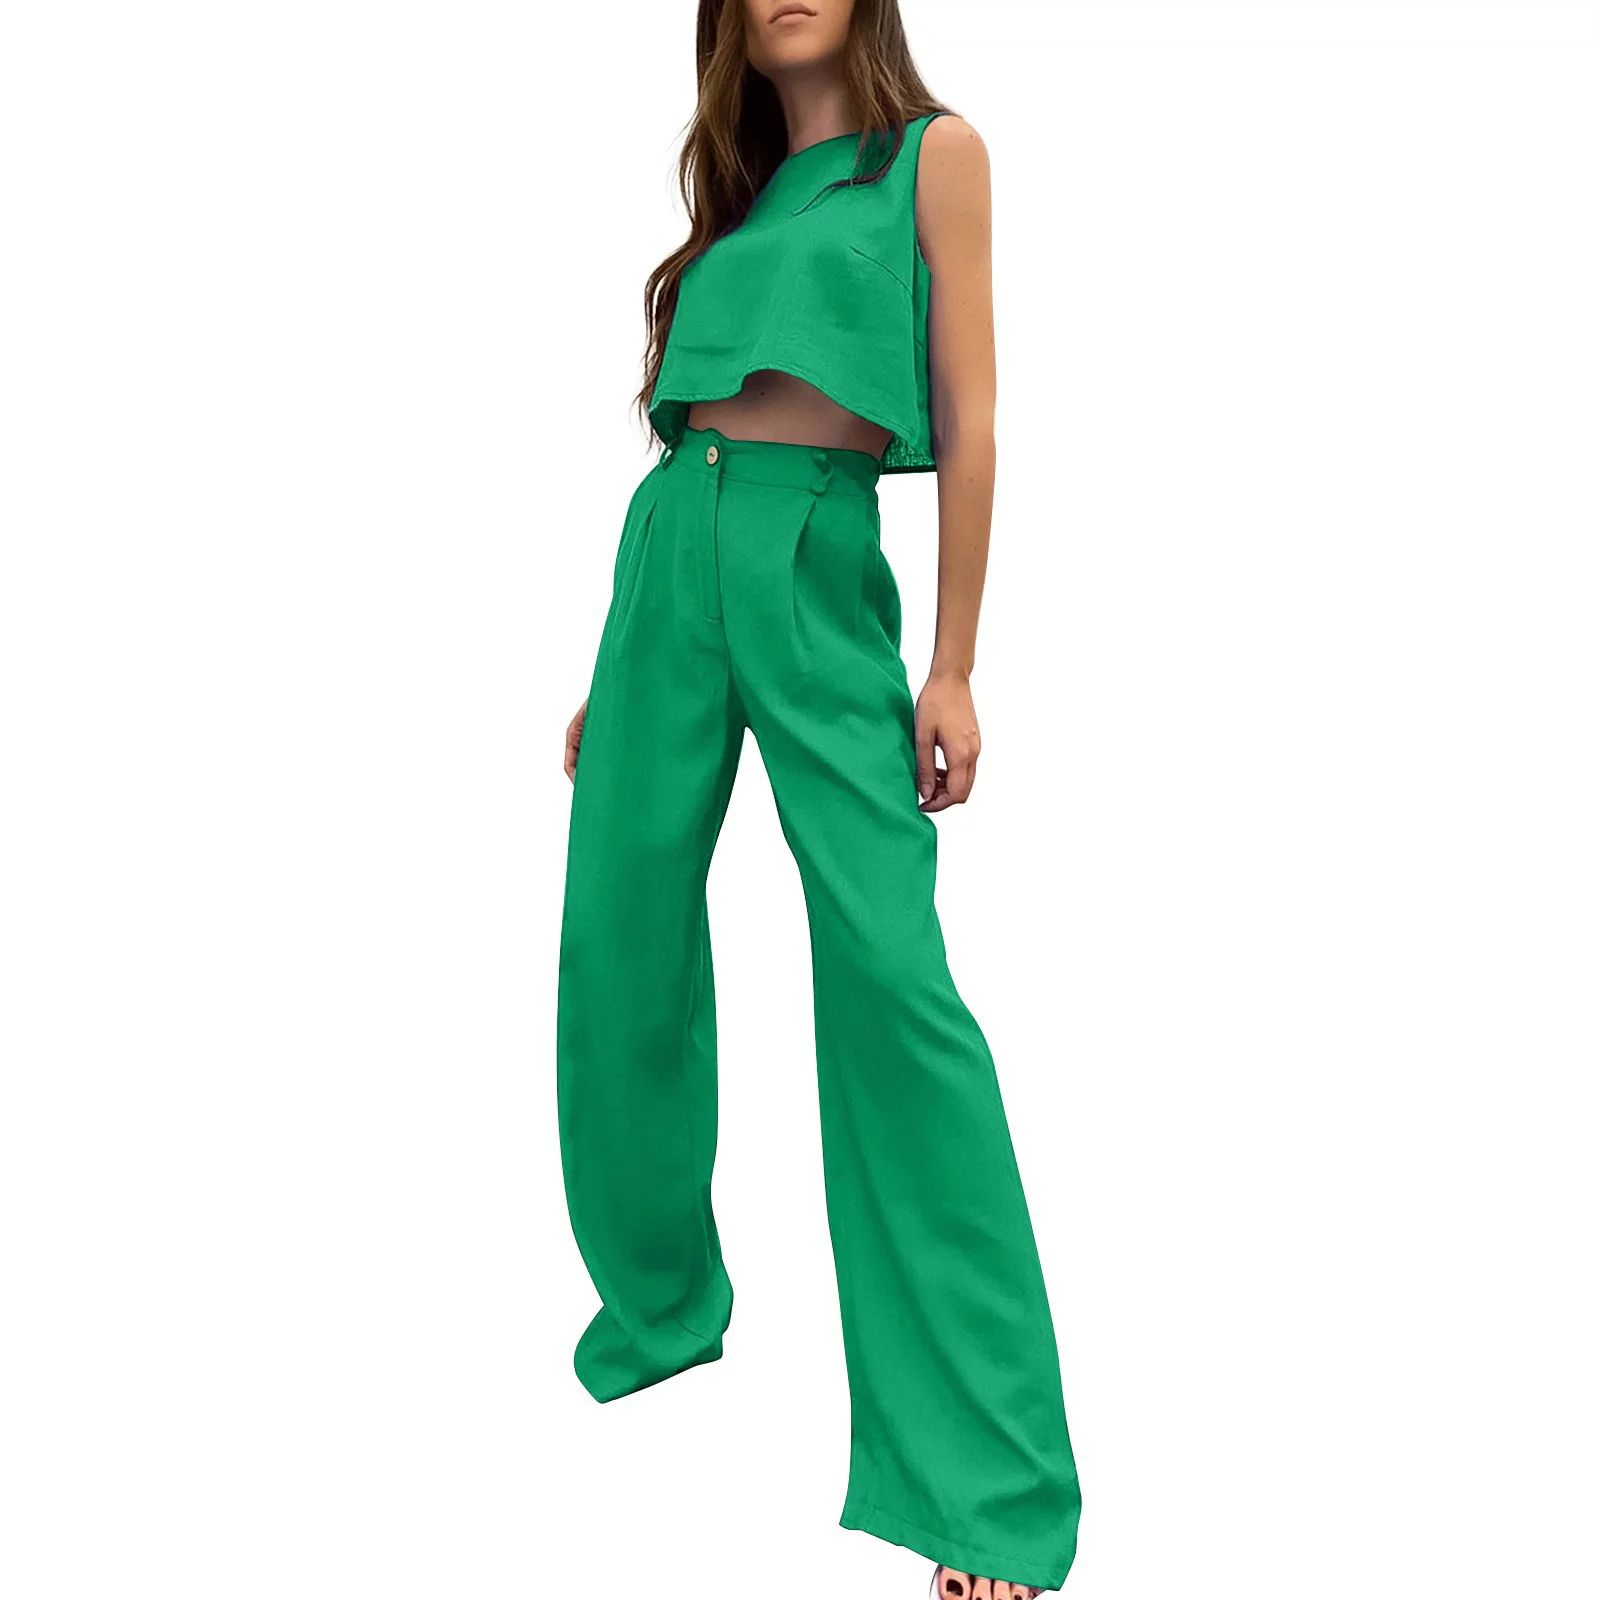 PMUYBHF Outfit for Women Date Night Two Piece Shorts Women's Cotton Linen Casual Fashion undershi... | Walmart (US)